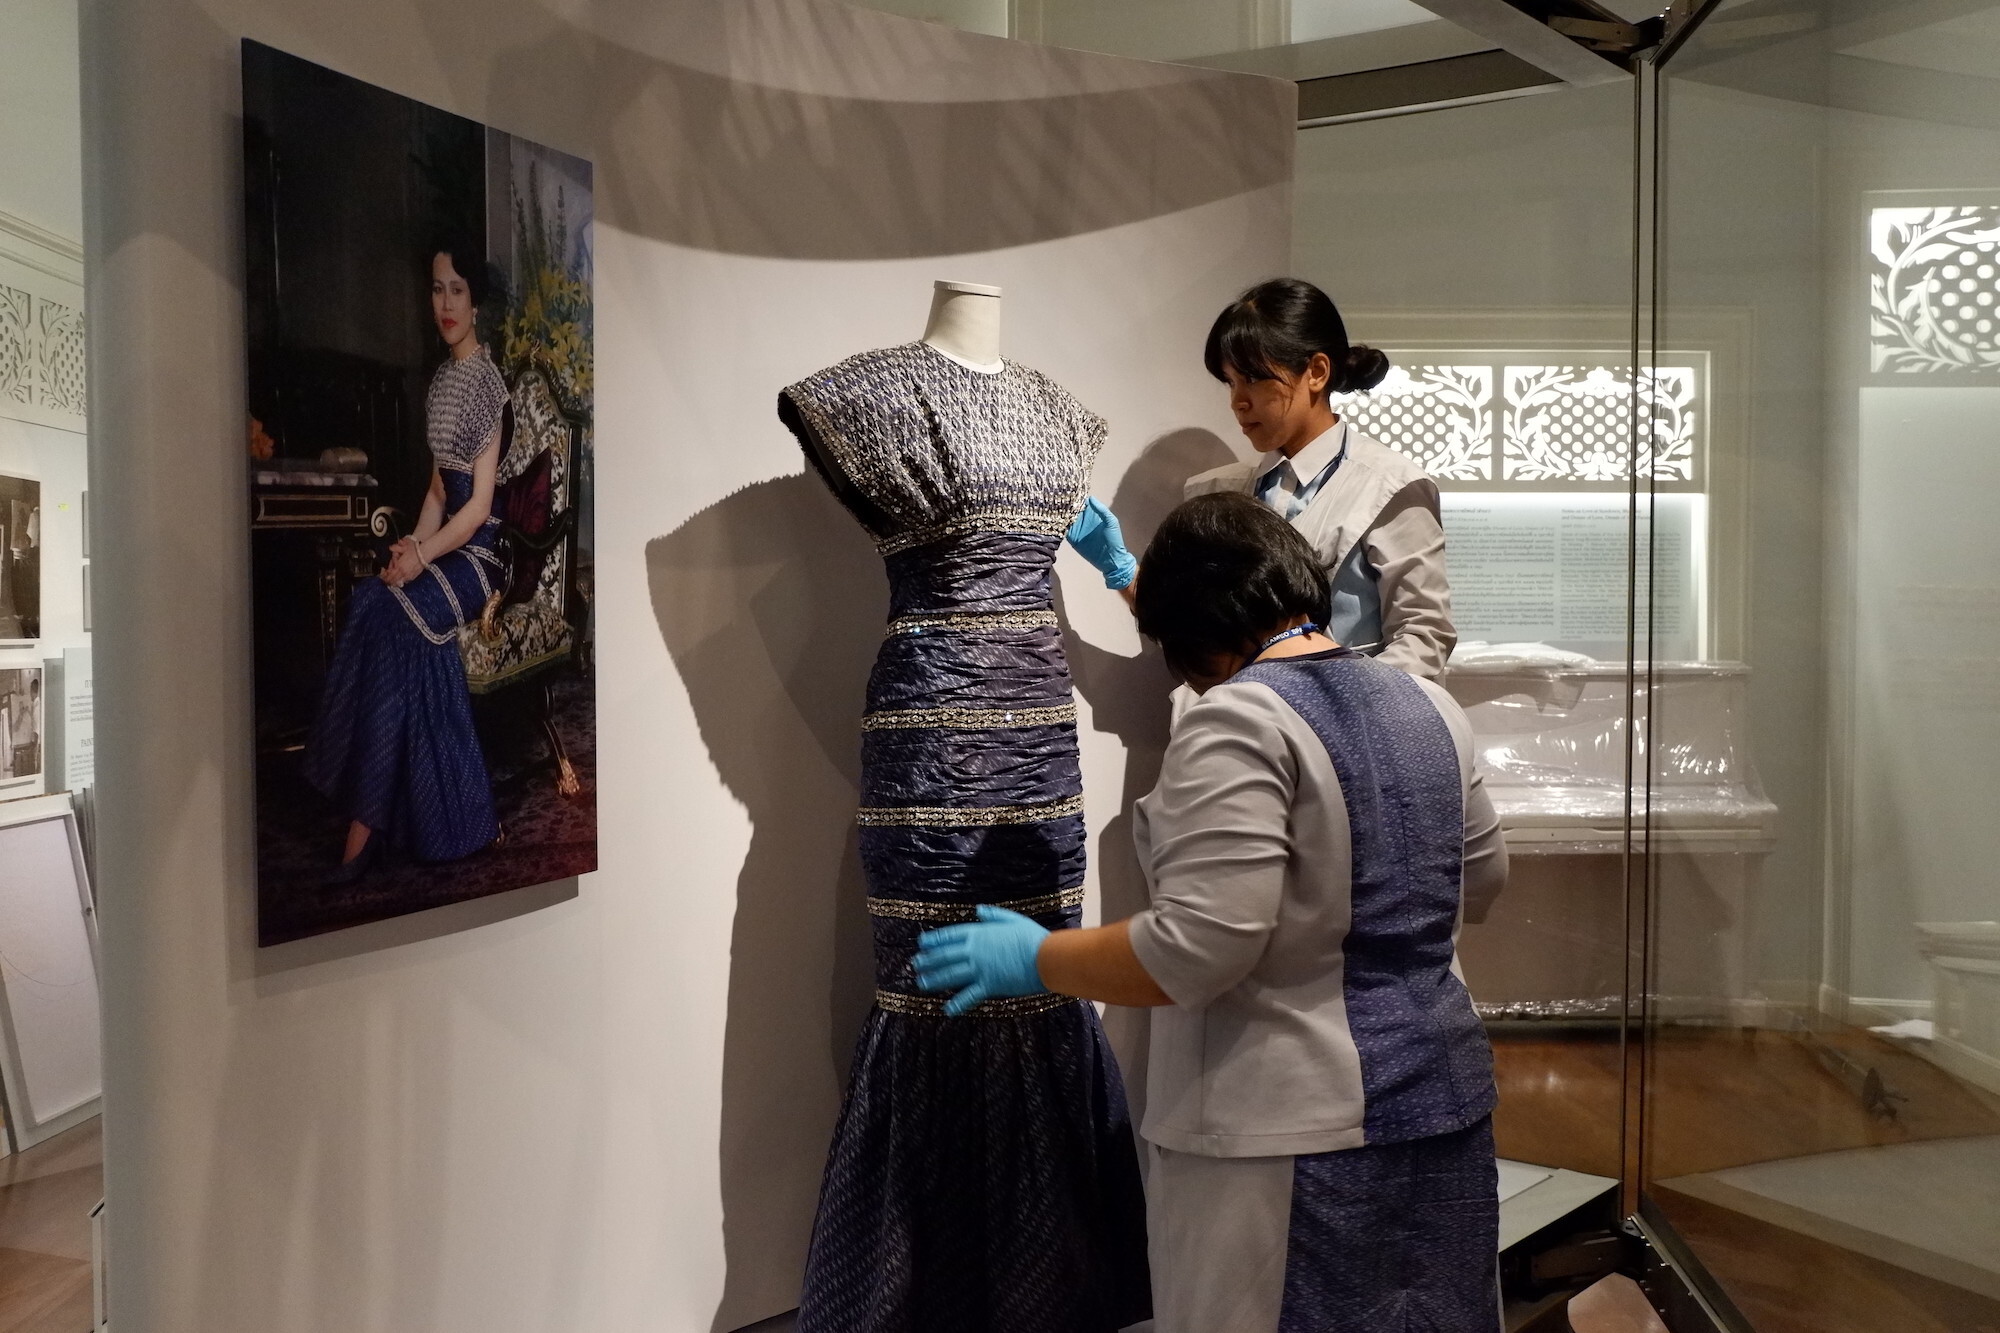 พิพิธภัณฑ์ผ้าฯ เผย ๕ ความลับเบื้องหลังความงดงามของผืนผ้า รู้ไว้ก่อนเข้าชม นิทรรศการ "สิริราชพัสตราบรมราชินีนาถ"